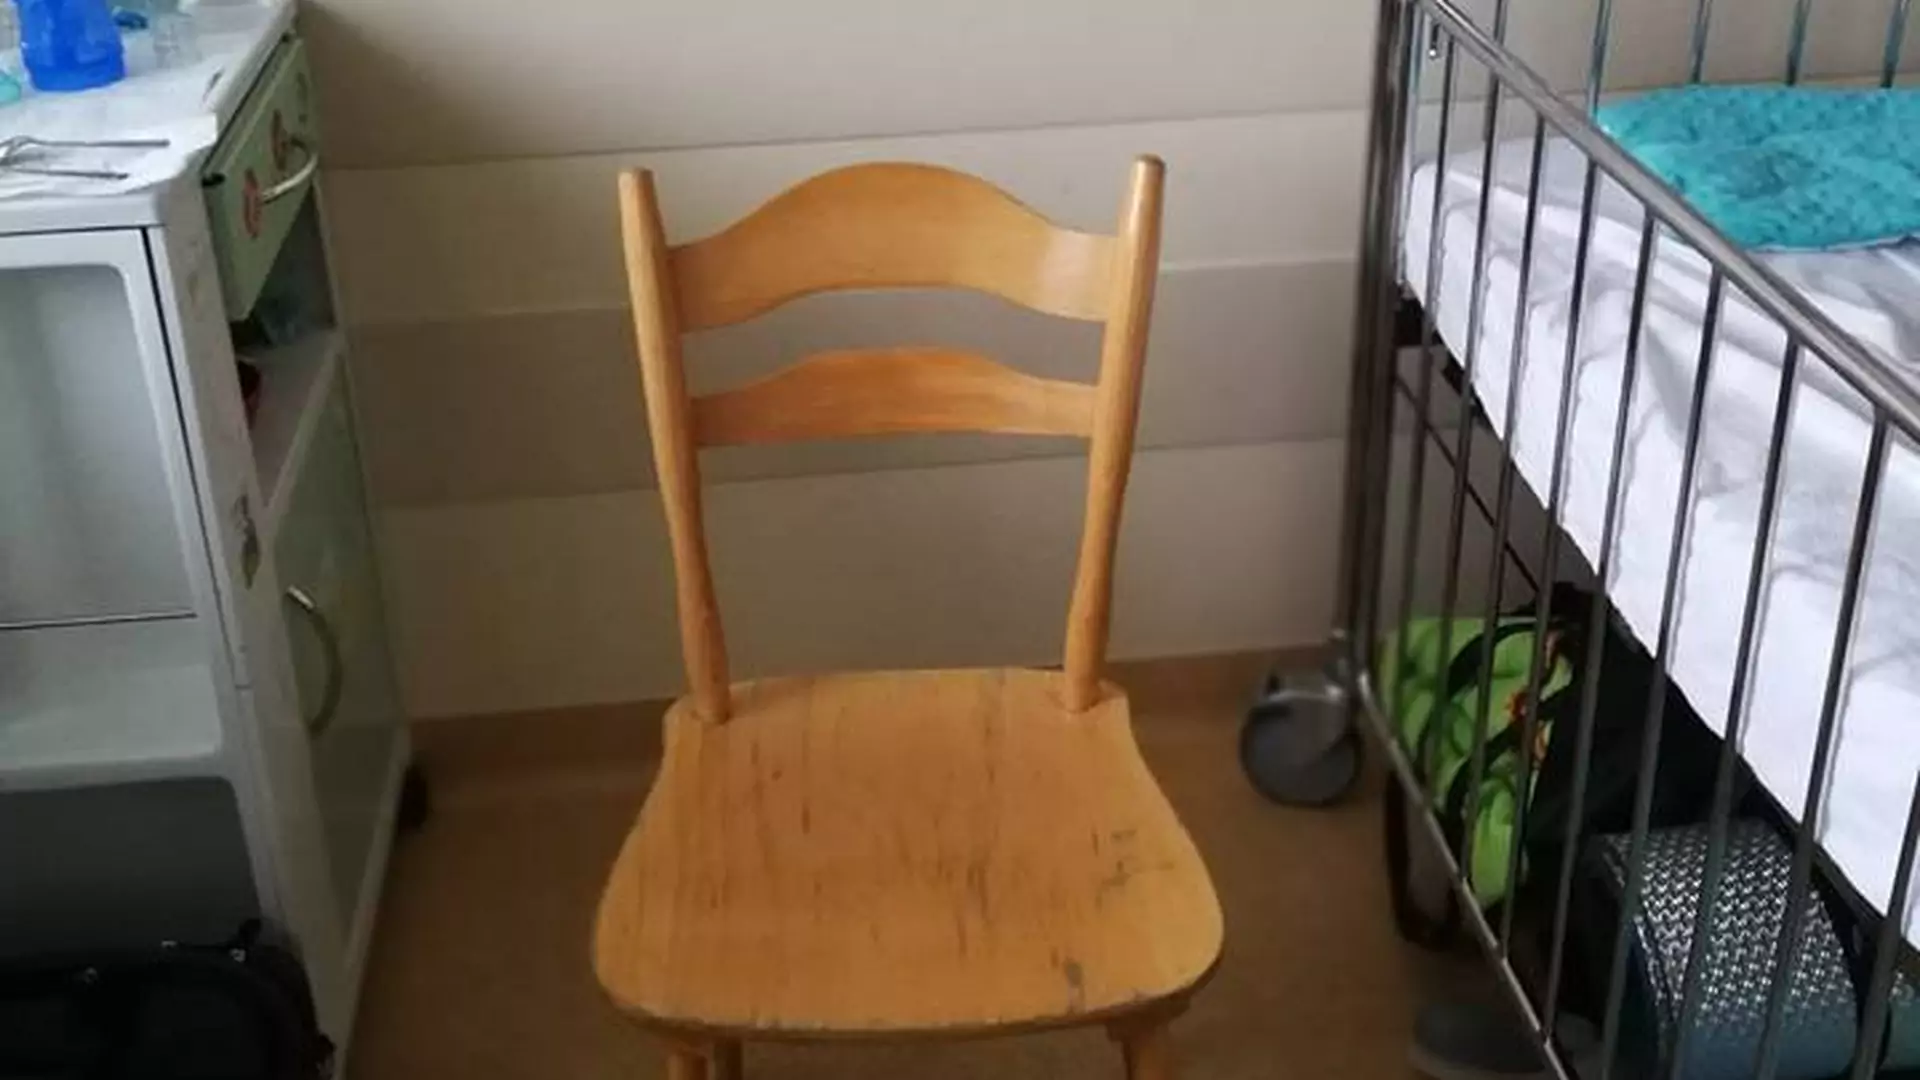 6,80 zł za szpitalne krzesło przy dziecięcym łóżku - tata pokazuje smutną rzeczywistość